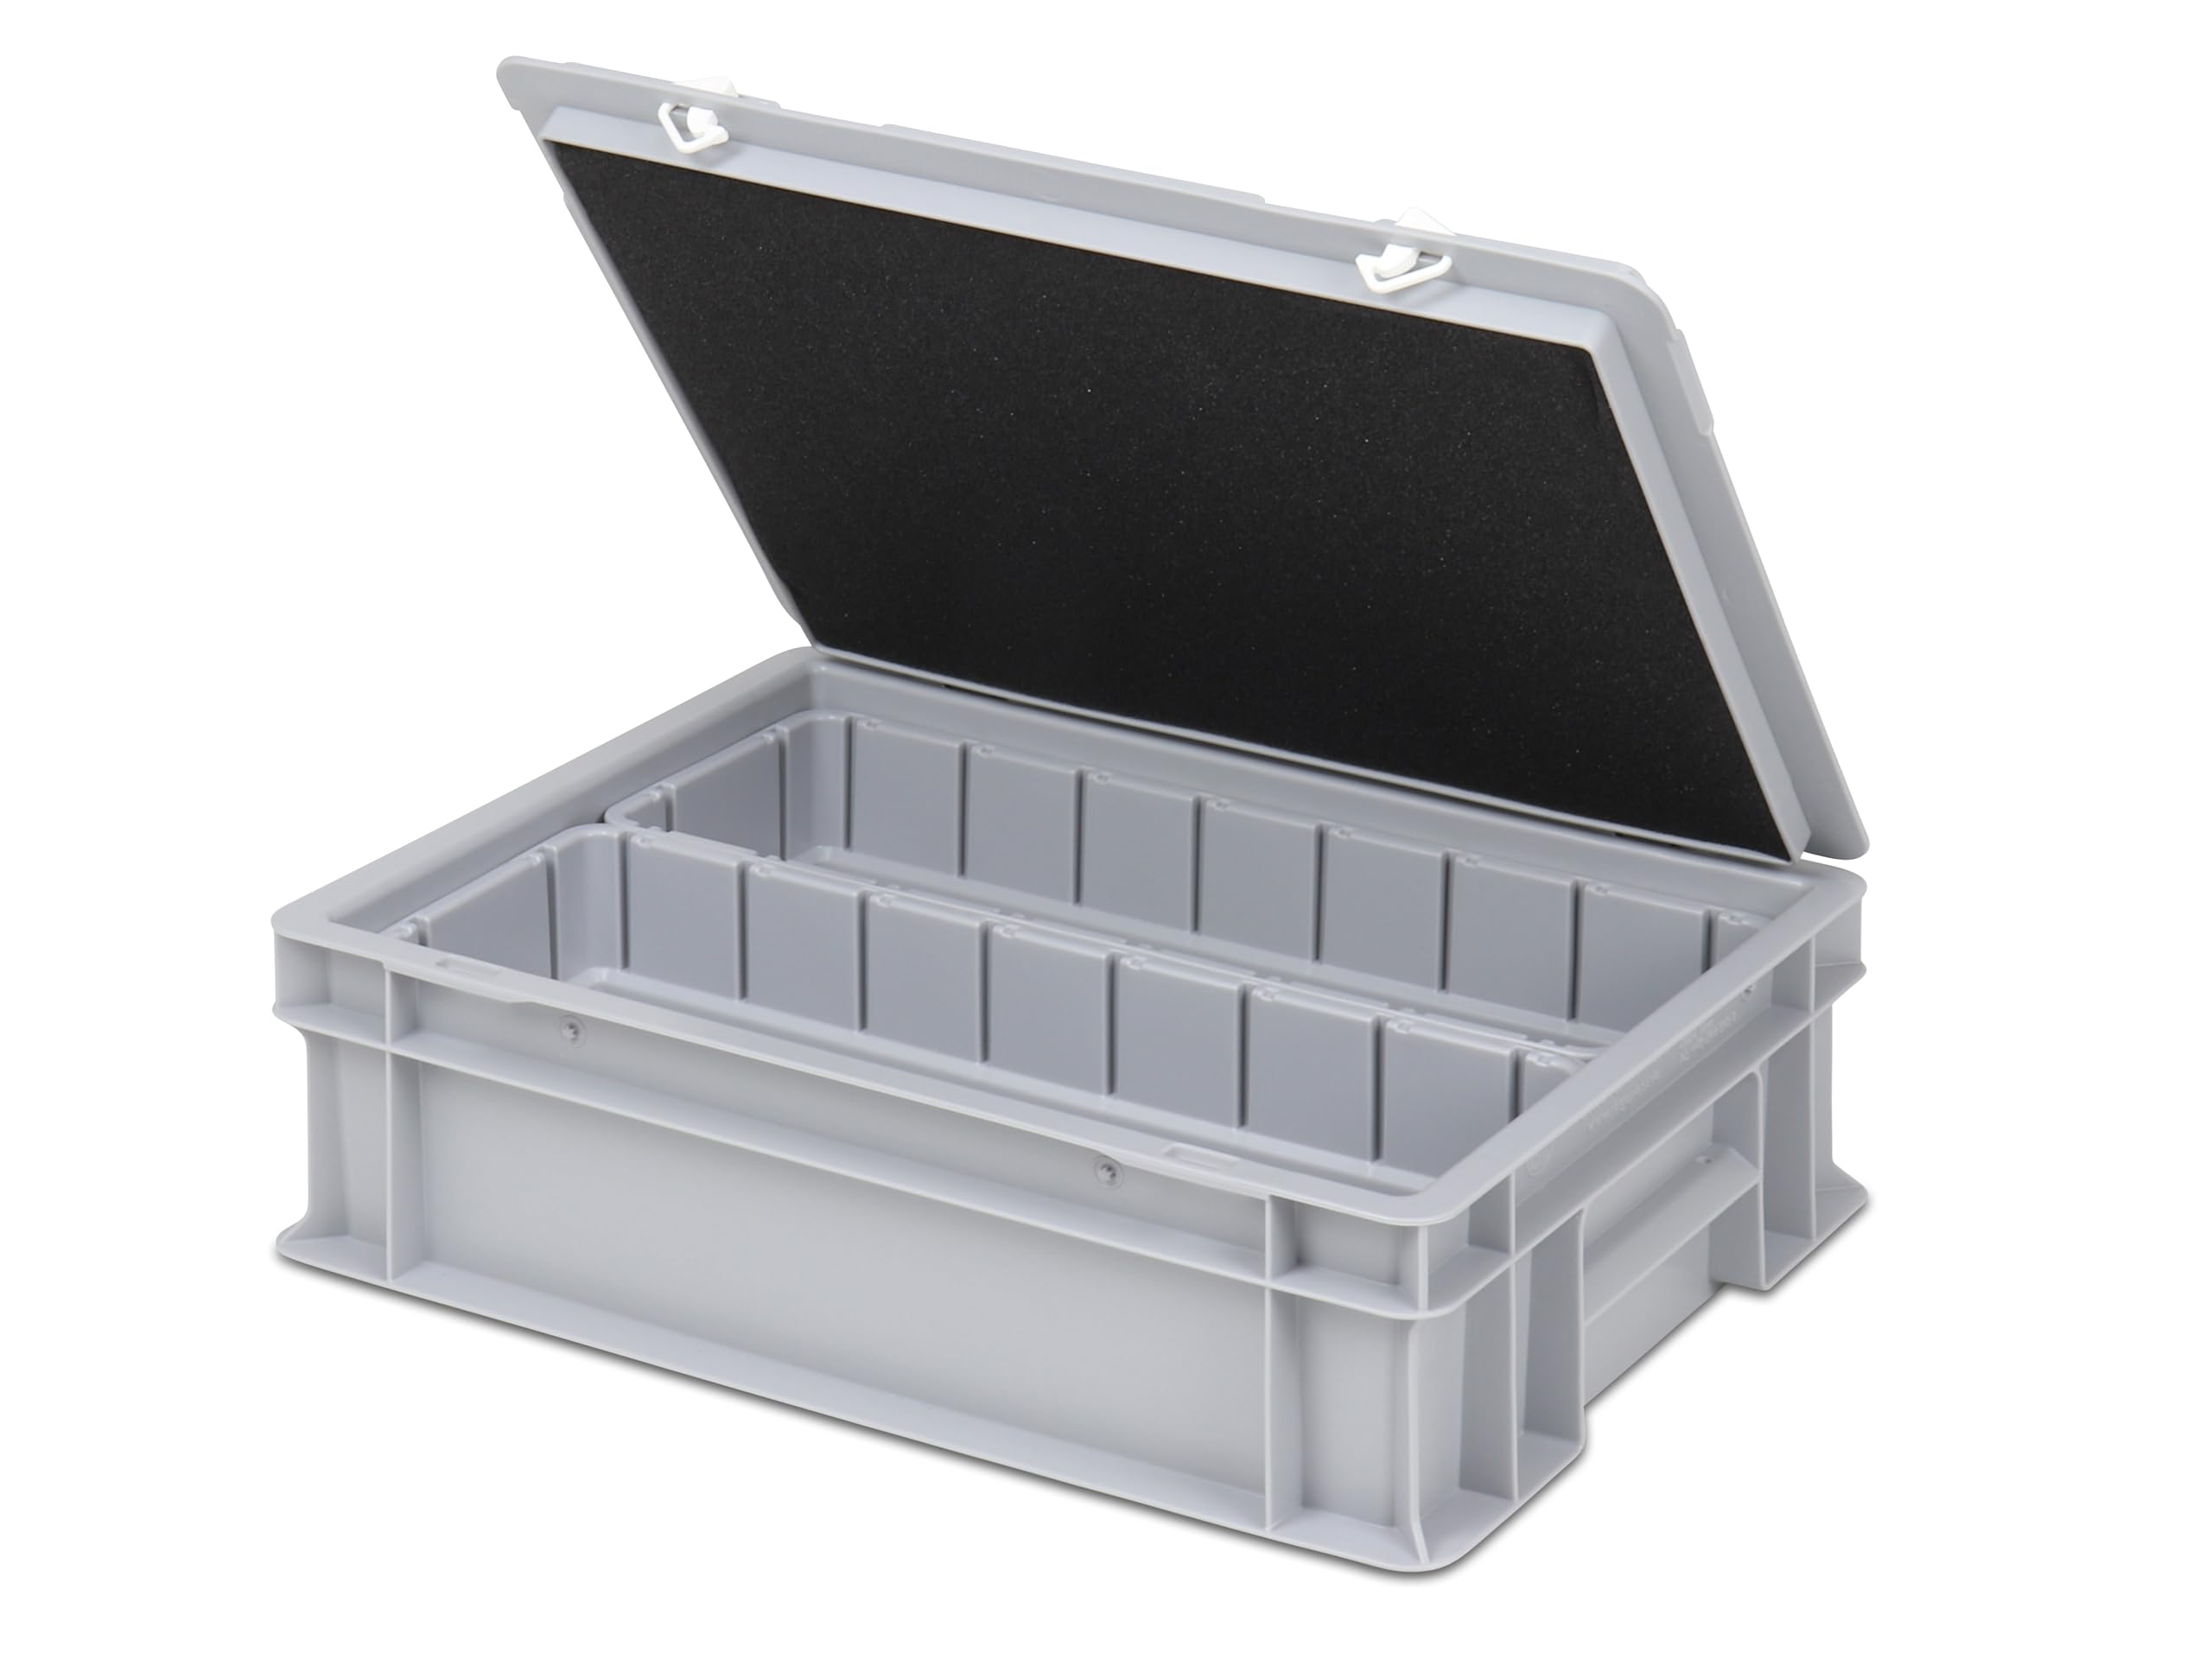 Einsatzkasten Einteilungs-Set für Eurobehälter, Schubladen mit Innenmaß 362x262 mm (LxB), 102 mm hoch, verschiedene Größen/Farben (2er Set inkl. Box + Deckel, grau)